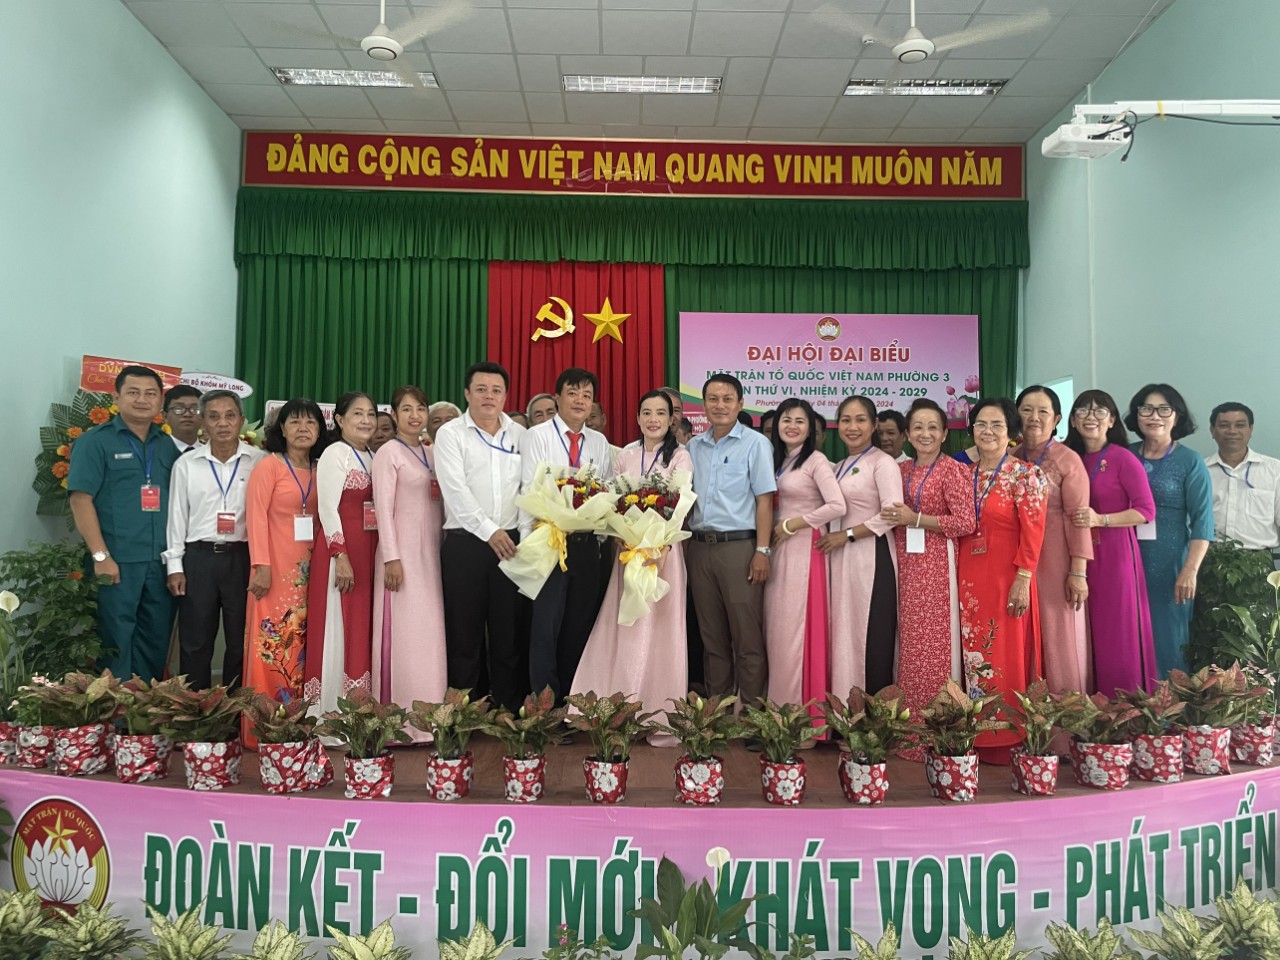 Phường 3: Tổ chức thành công Đại hội Đại biểu Mặt trận Tổ quốc Việt Nam Phường 3 lần thứ VI, nhiệm kỳ 2024 - 2029